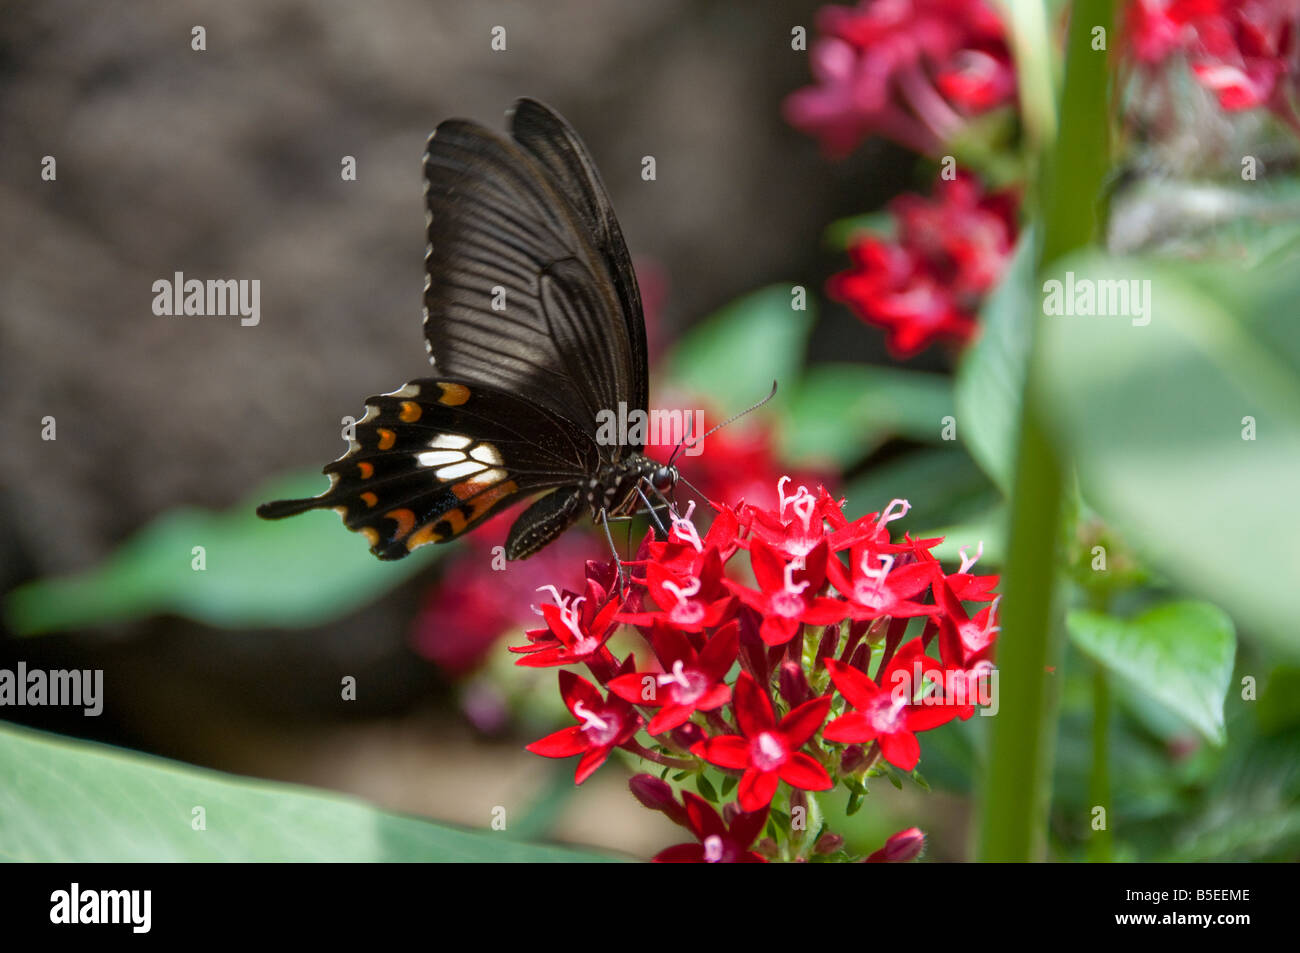 Black Swallowtail butterfly en sirotant un nectar de fleur rouge dans l'habitat naturel Banque D'Images